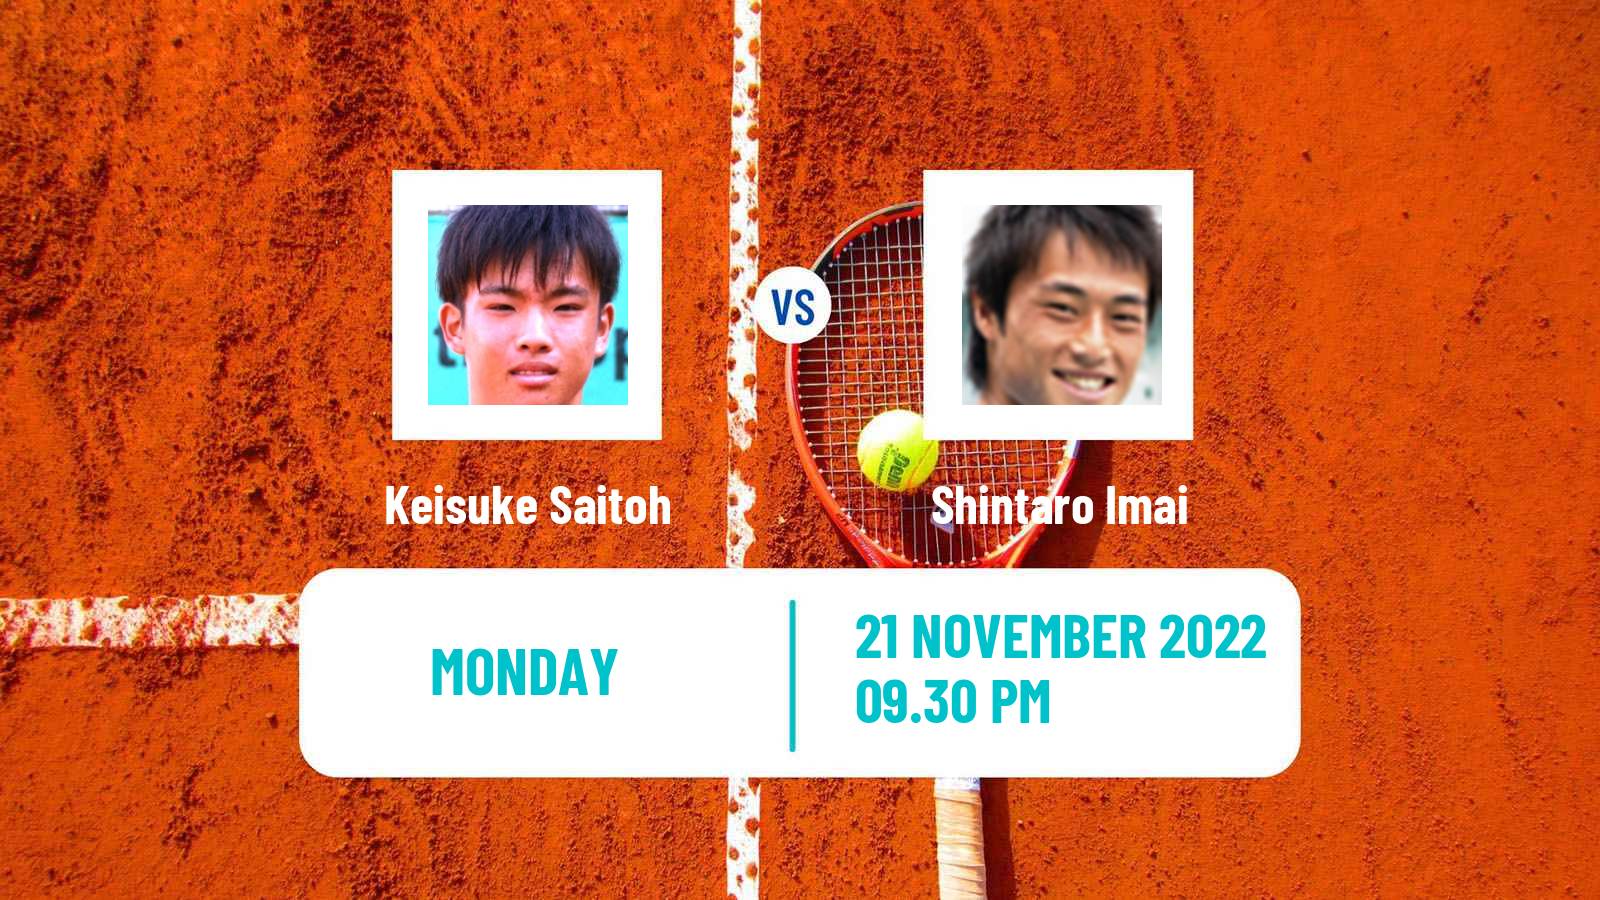 Tennis ATP Challenger Keisuke Saitoh - Shintaro Imai